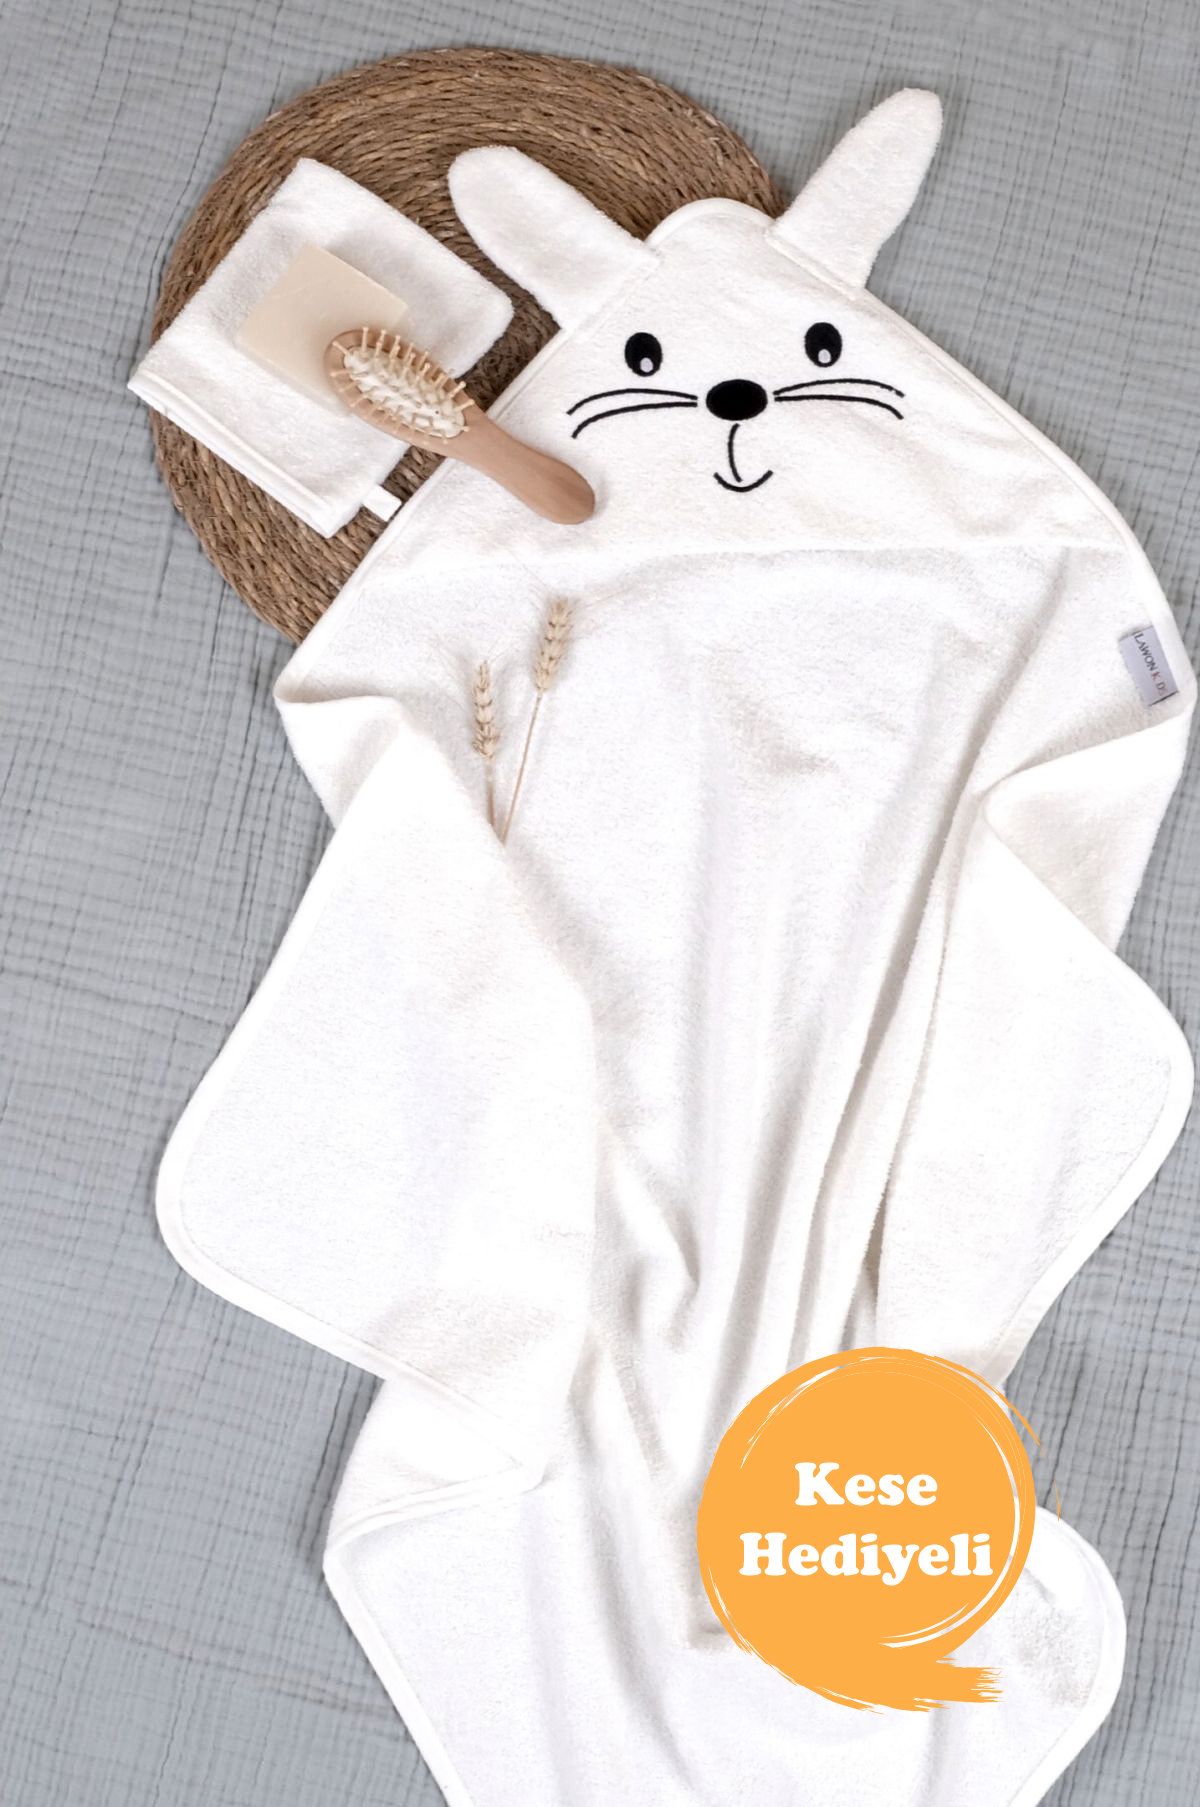 Lawon Kids %100 Pamuk Tavşan Desen Nakışlı ve Kese Hediyeli Bebek Havlu Kundak *Beyaz